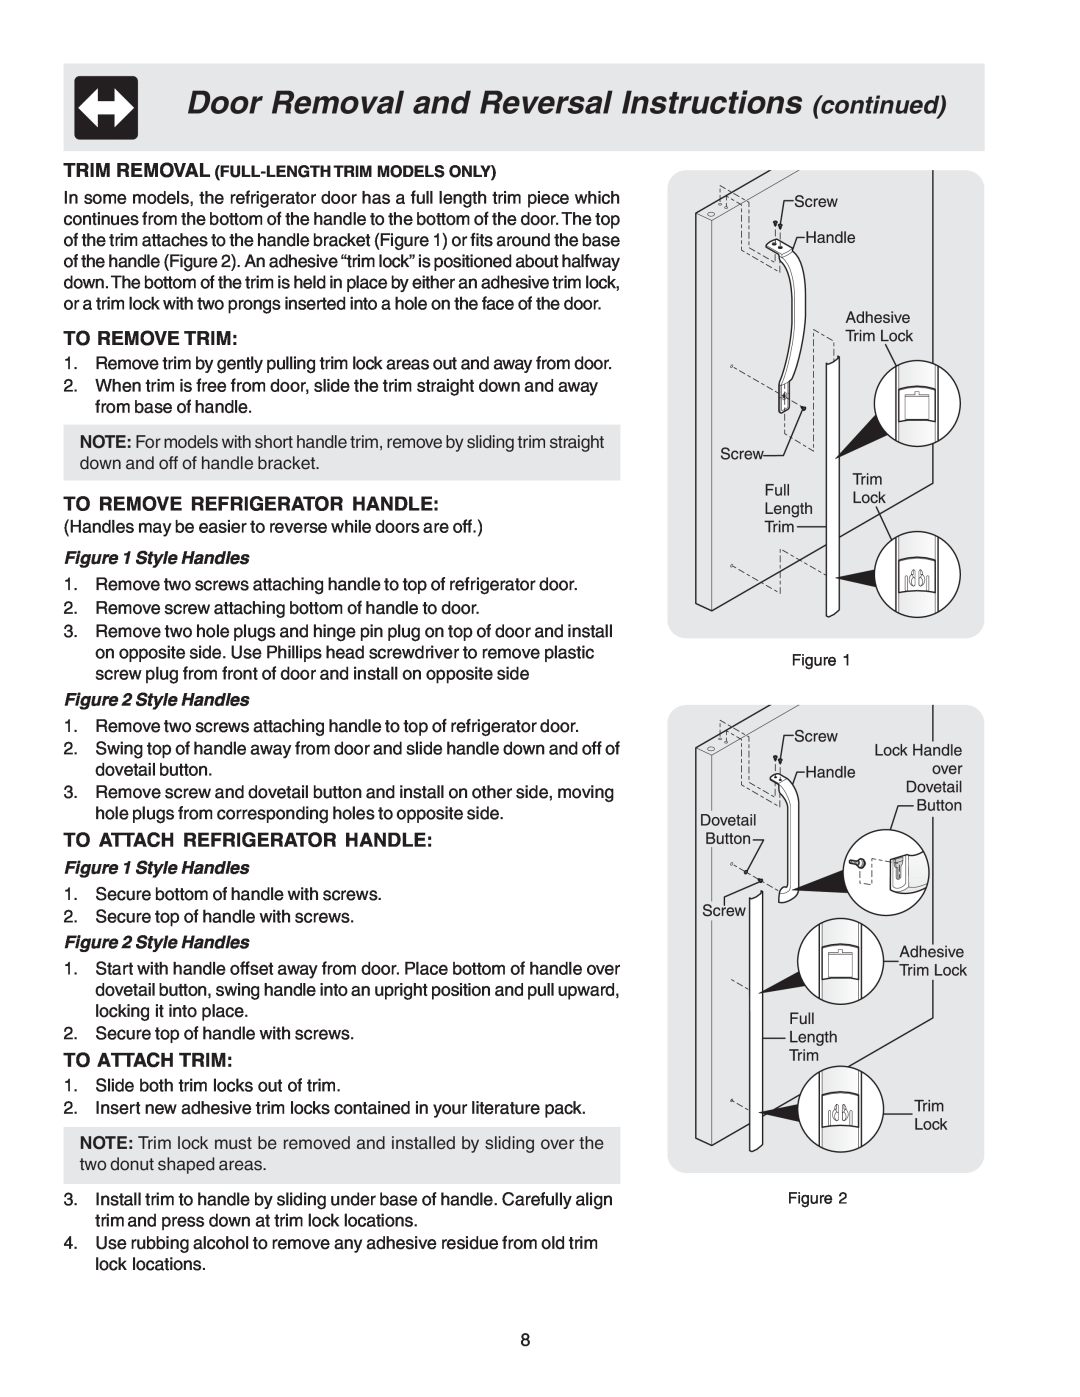 Crosley 241559900 manual To Remove Trim, To Remove Refrigerator Handle, To Attach Refrigerator Handle, To Attach Trim 